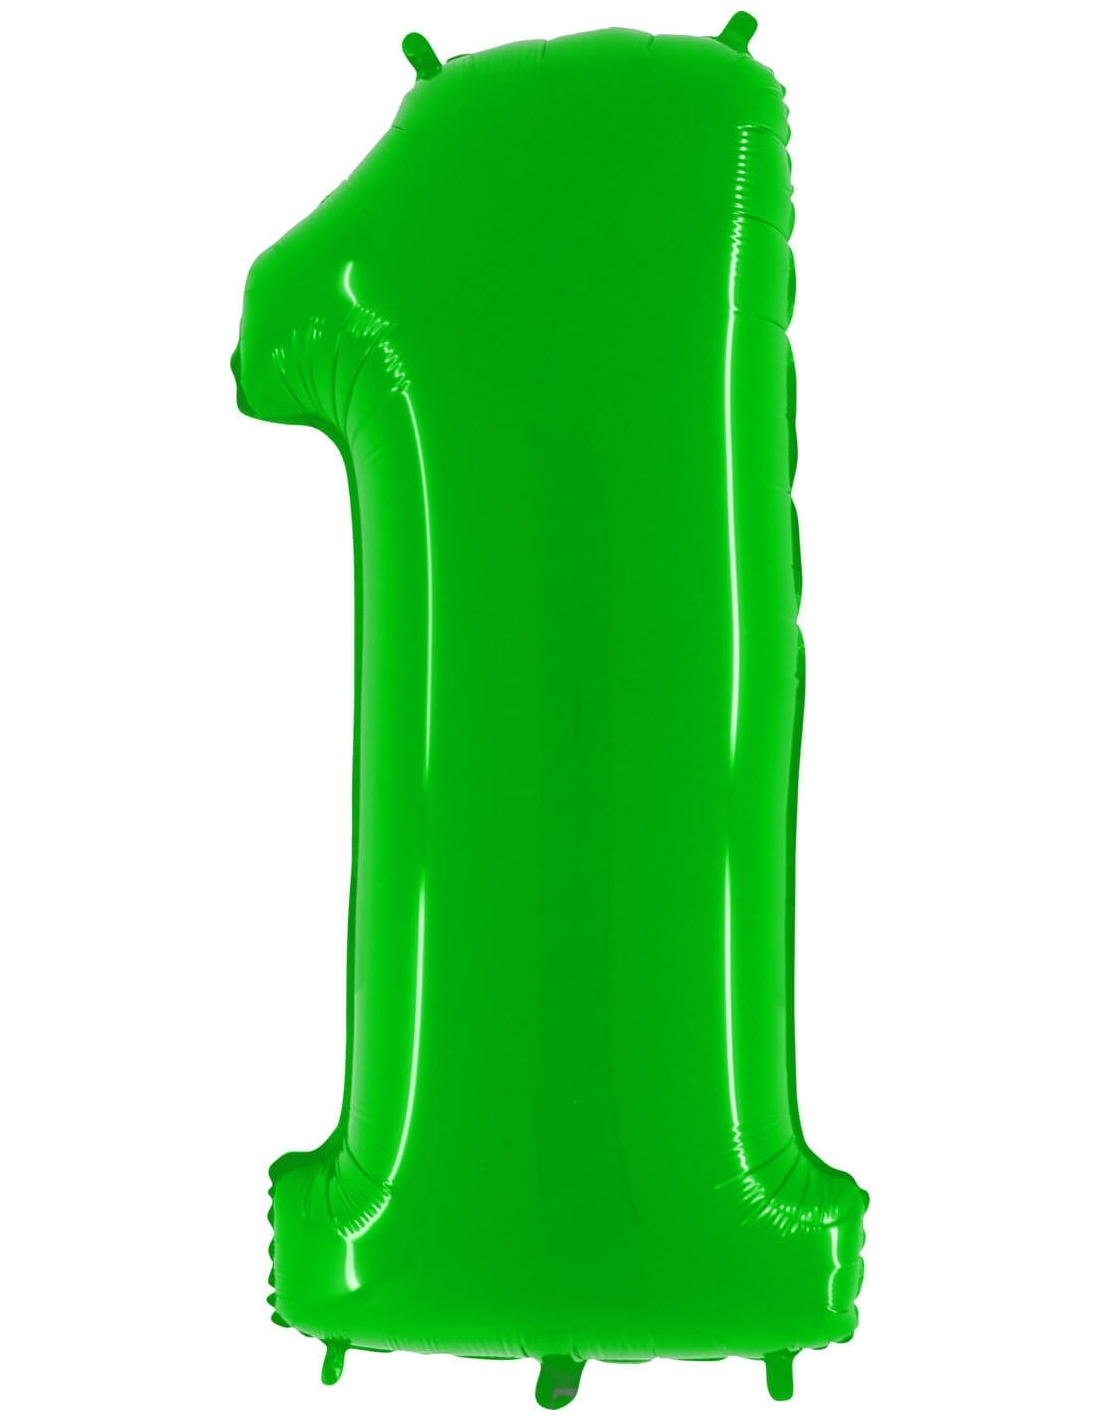 Globos de Helio Numero 1 de 100cm Verde Neon Gigante G901WHL